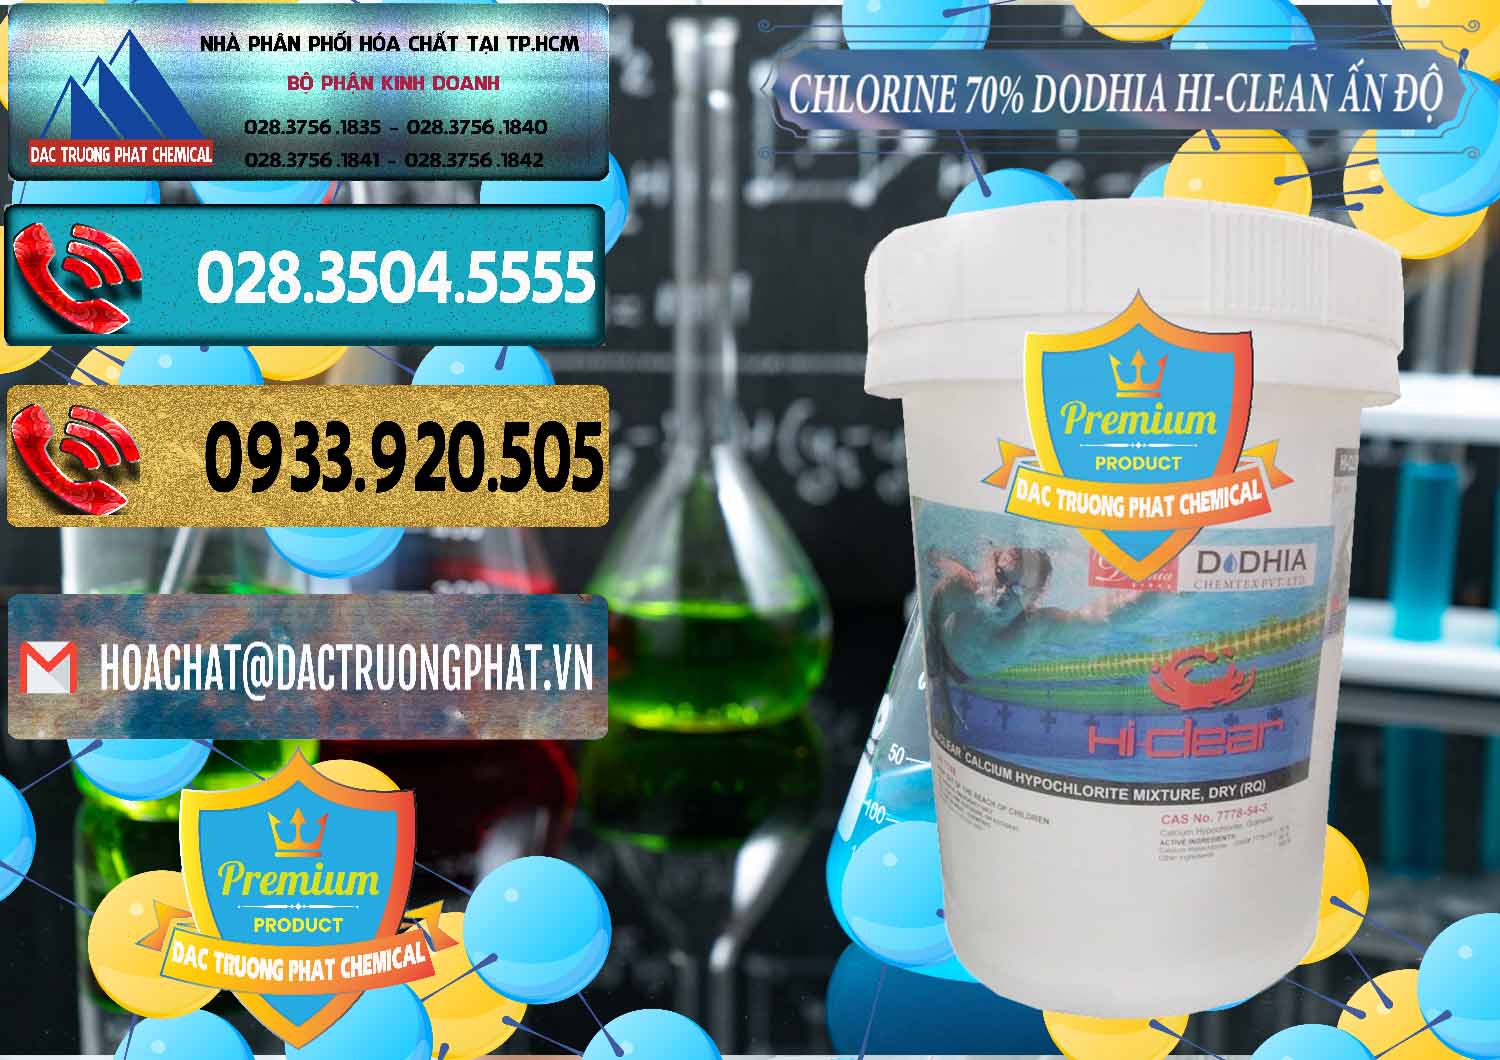 Nơi nhập khẩu & bán Chlorine – Clorin 70% Dodhia Hi-Clean Ấn Độ India - 0214 - Nhà phân phối và cung cấp hóa chất tại TP.HCM - hoachatdetnhuom.com